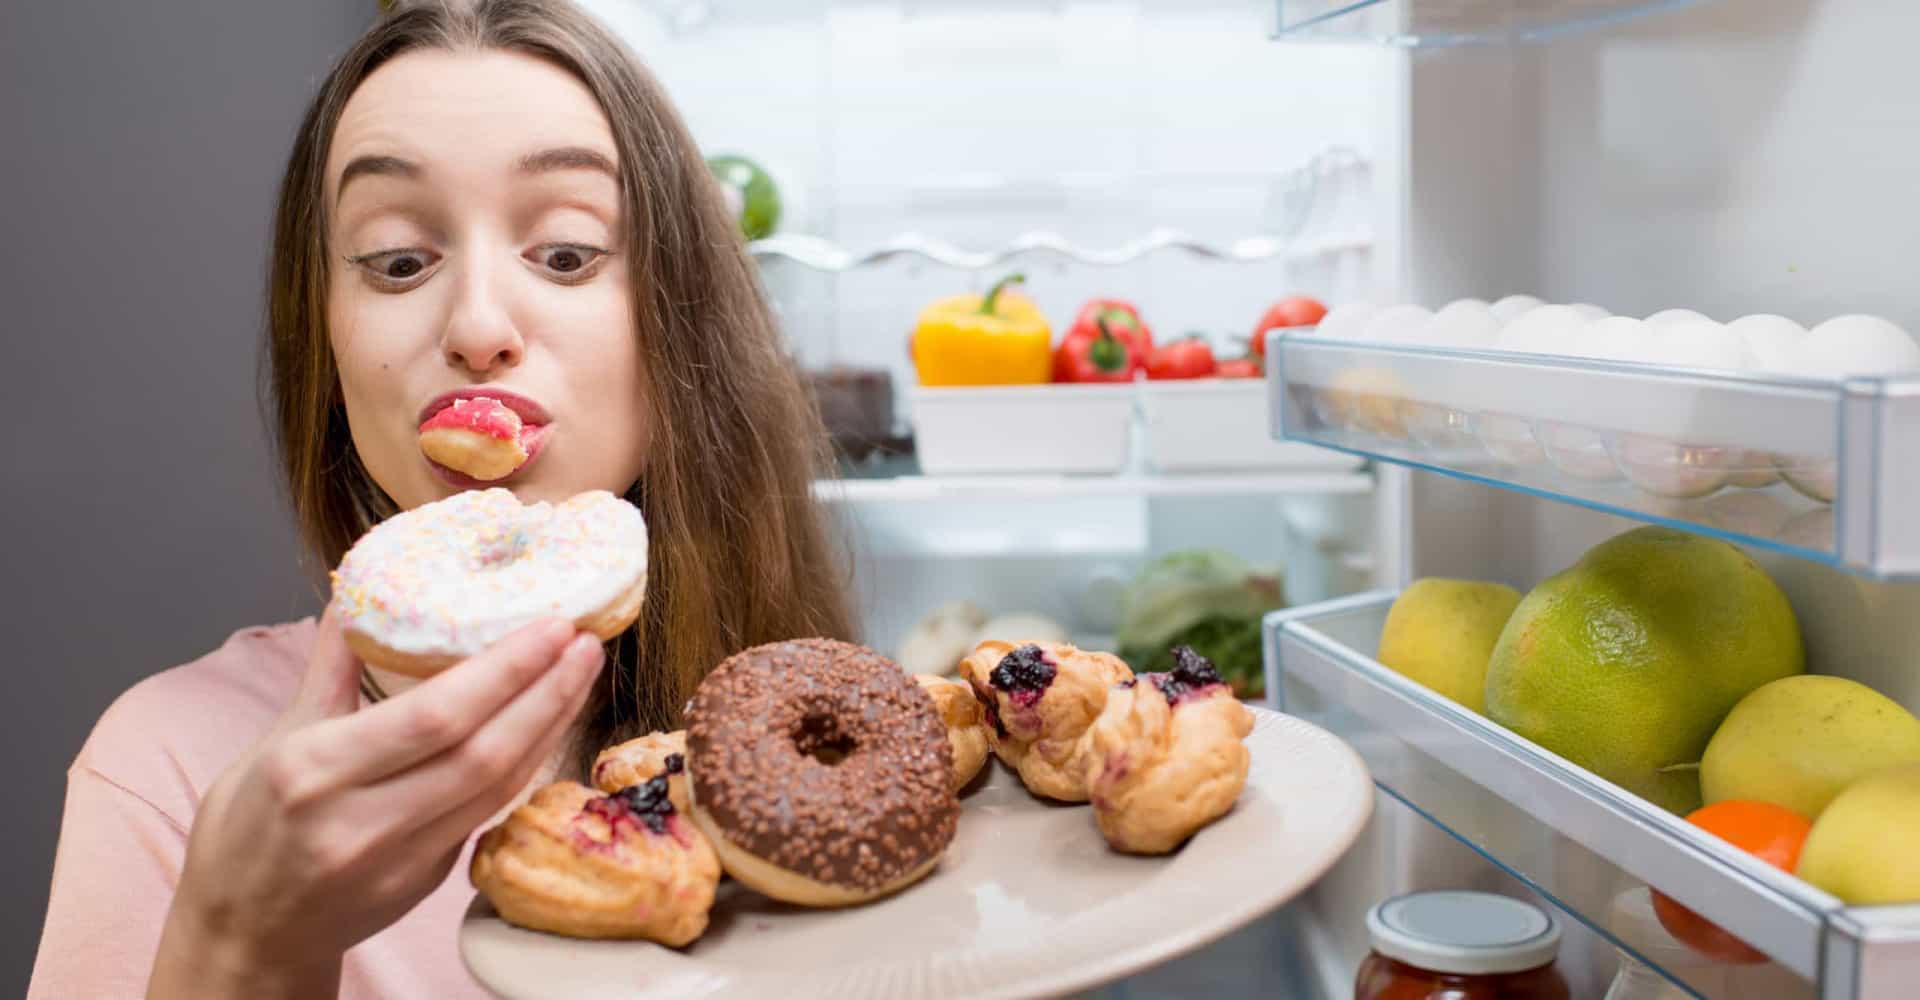 Dietas bajas en azúcares: ¿Son realmente saludables?